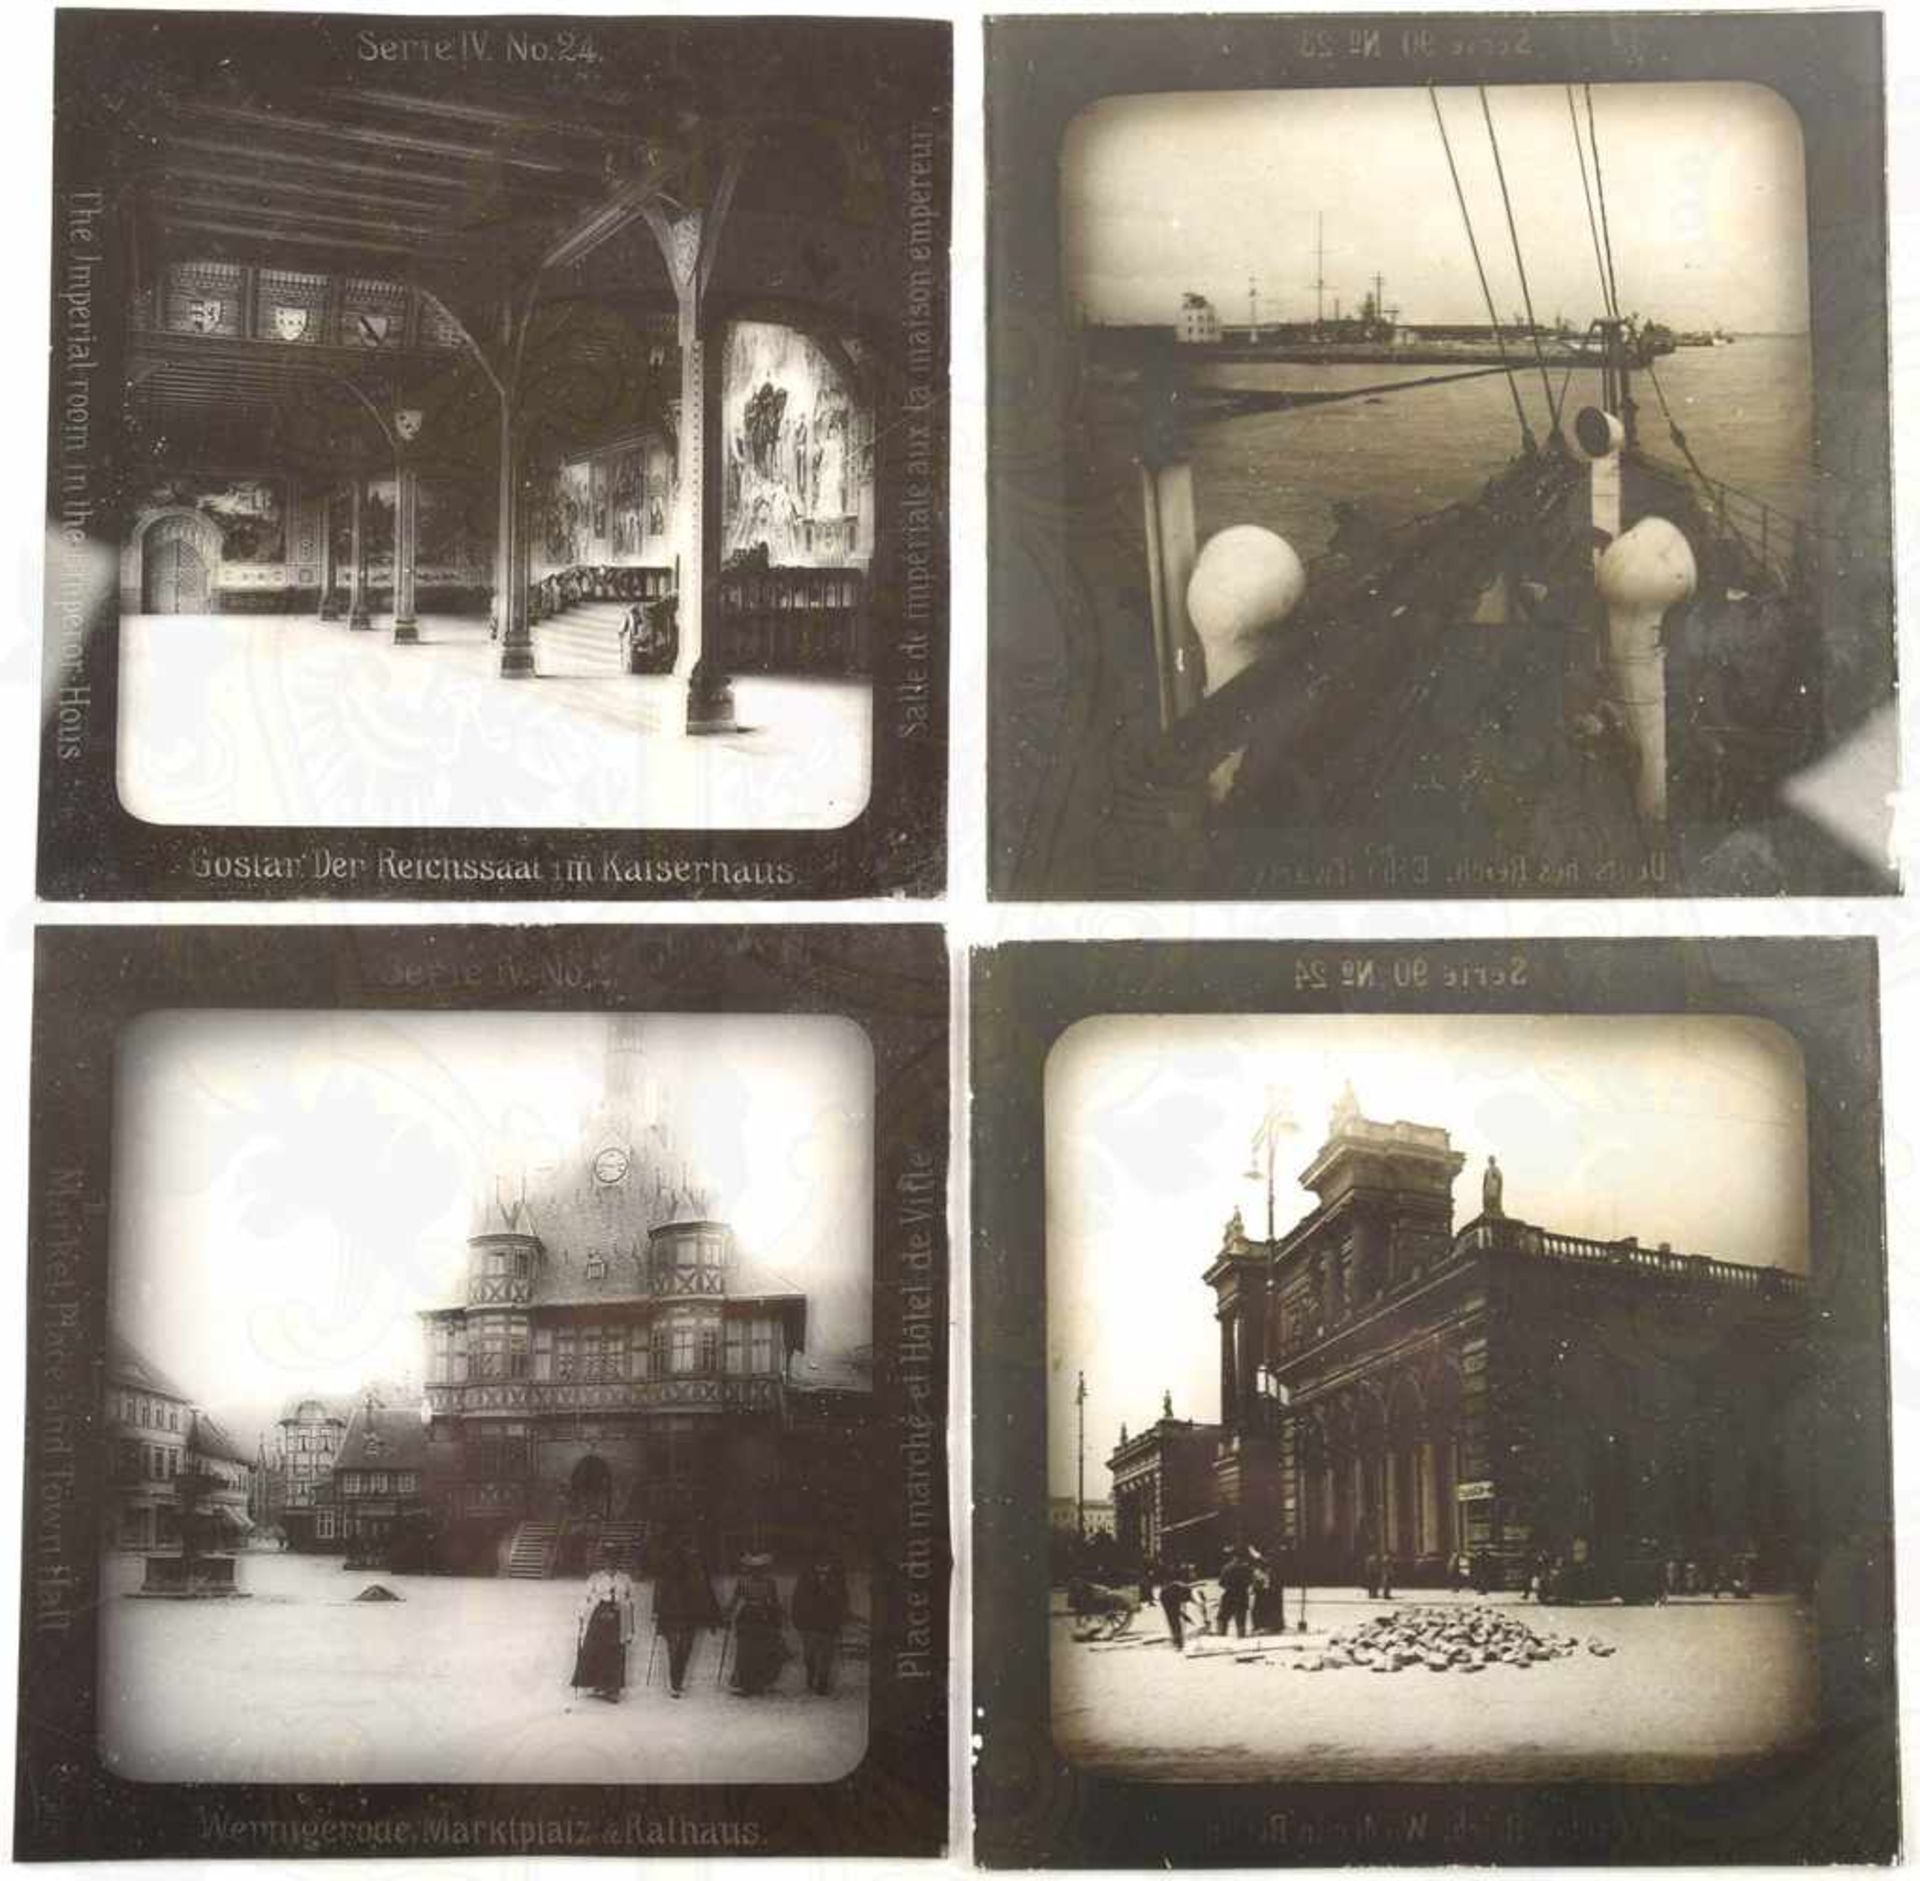 55 GLASDIAS KÜSTEN WESTEUROPAS UND HARZ, um 1910, Serie 90, Portsmouth, Ruine Melrose Abbey, - Image 2 of 2